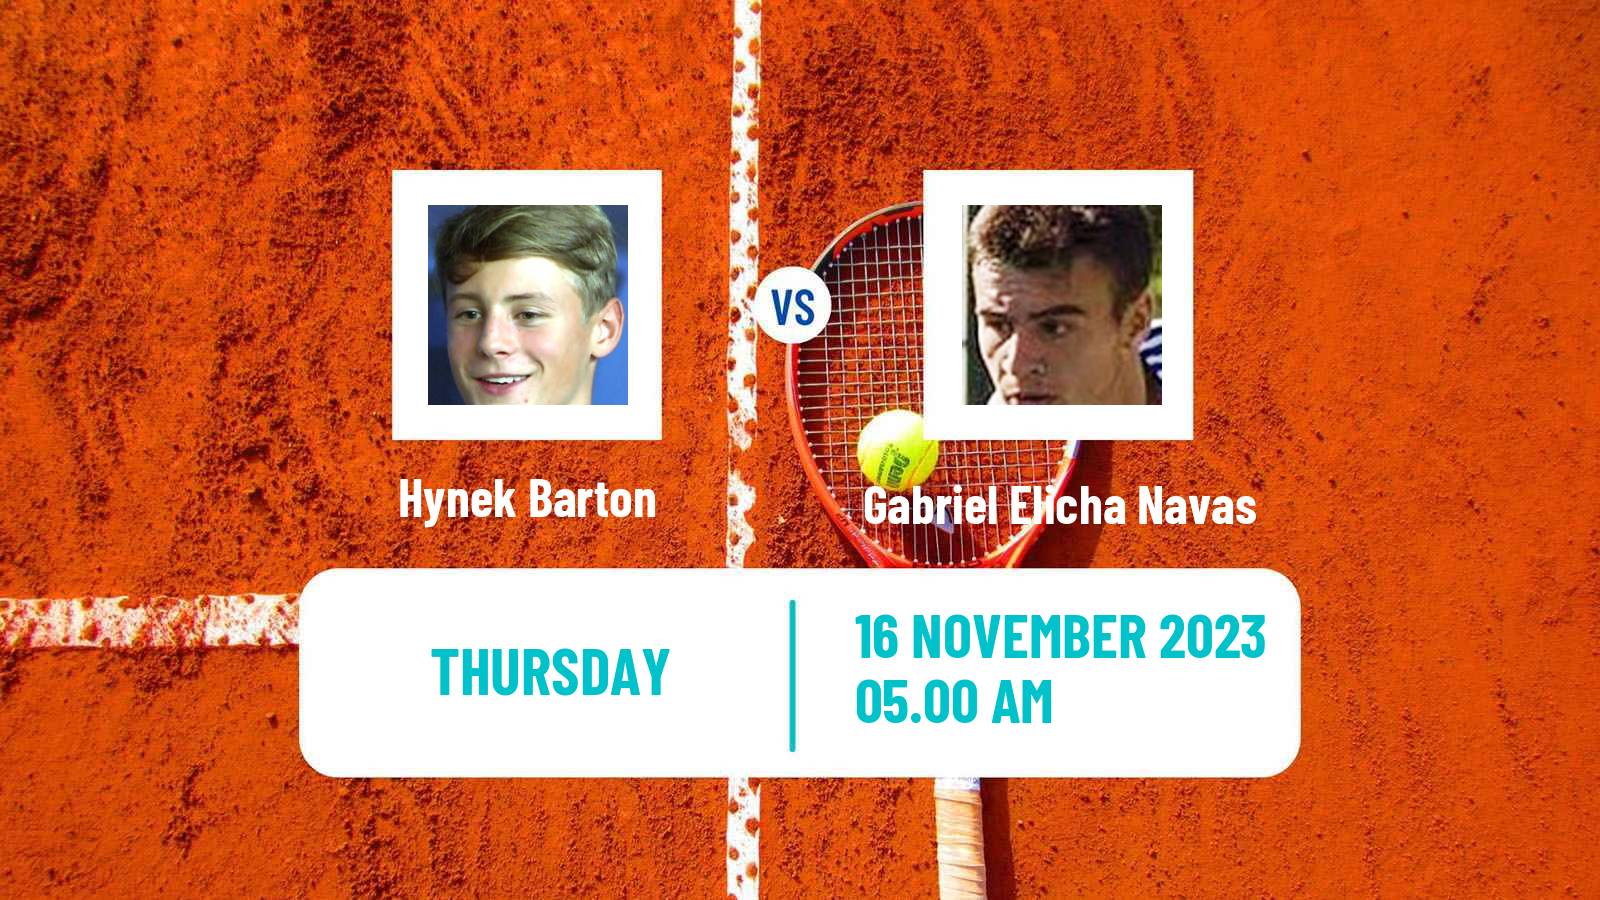 Tennis ITF M25 Vale Do Lobo Men Hynek Barton - Gabriel Elicha Navas